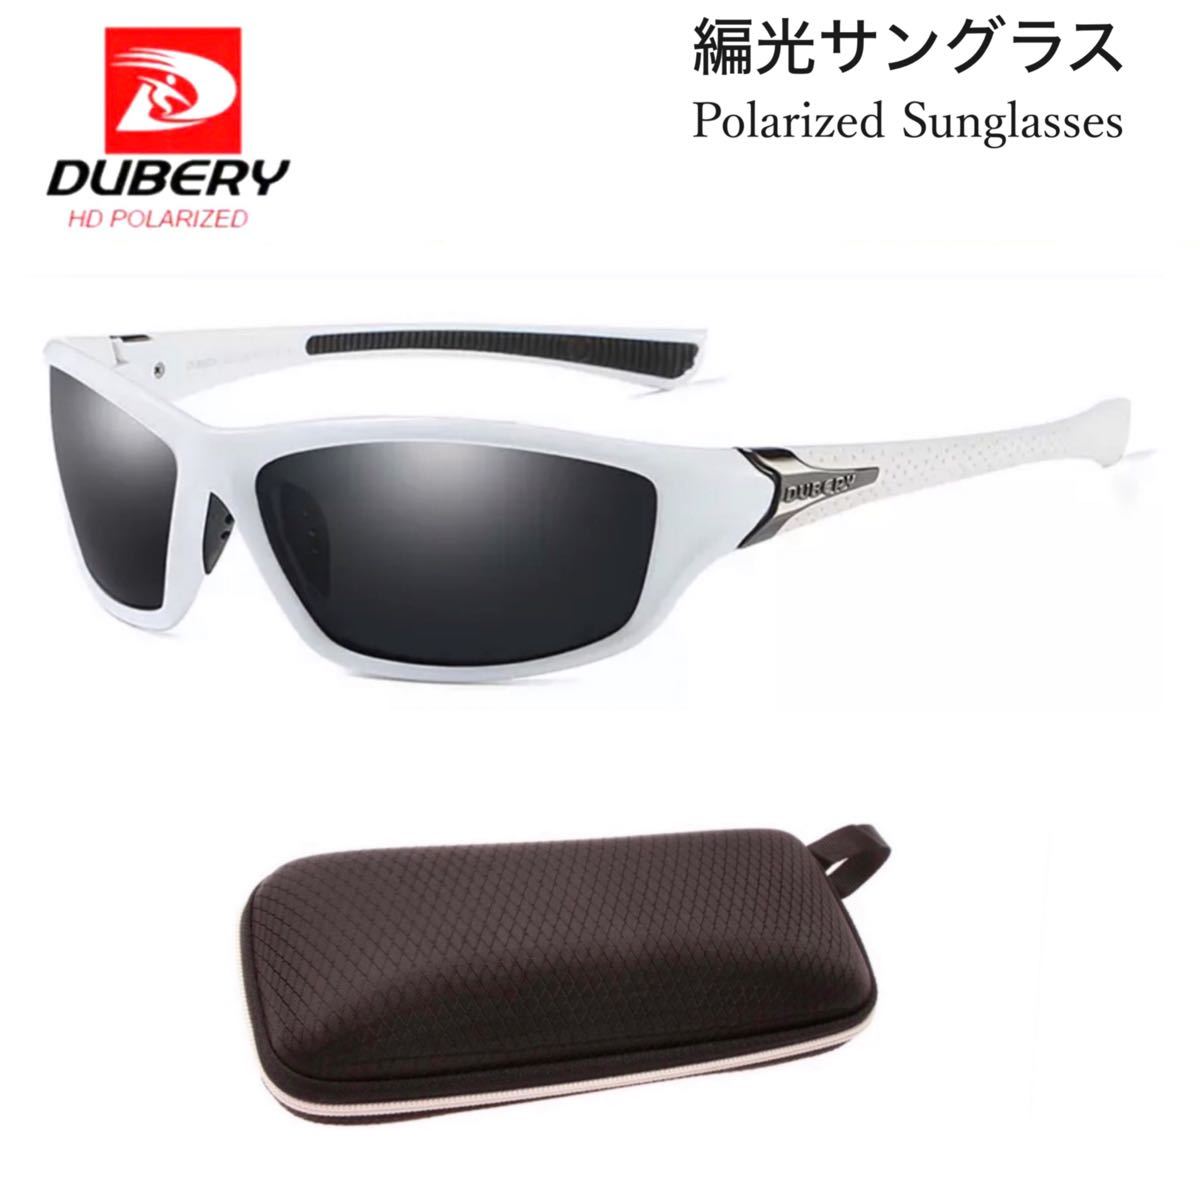 DUBERY サングラス 偏光グラス UV400 白 車  釣り アウトドア スポーツサングラス 超軽量